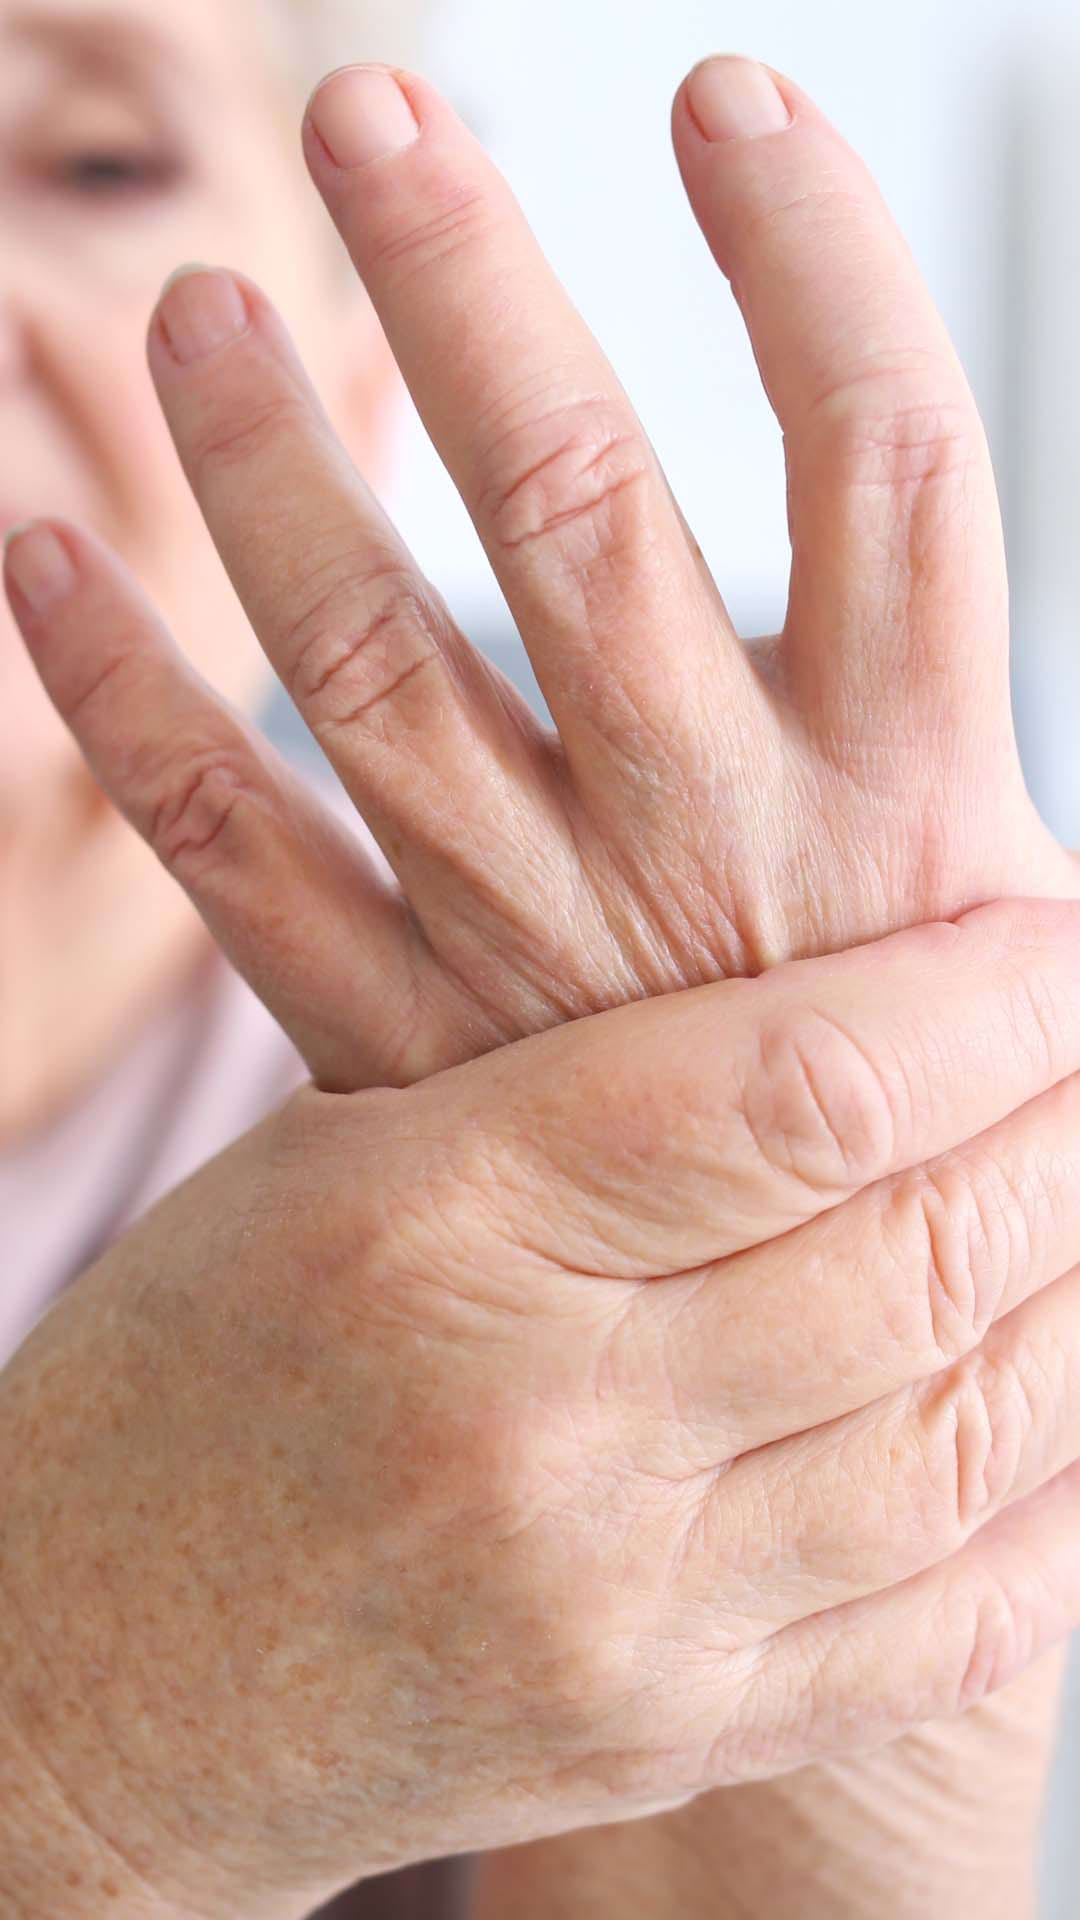 prevenirea artritei și artrozei articulațiilor